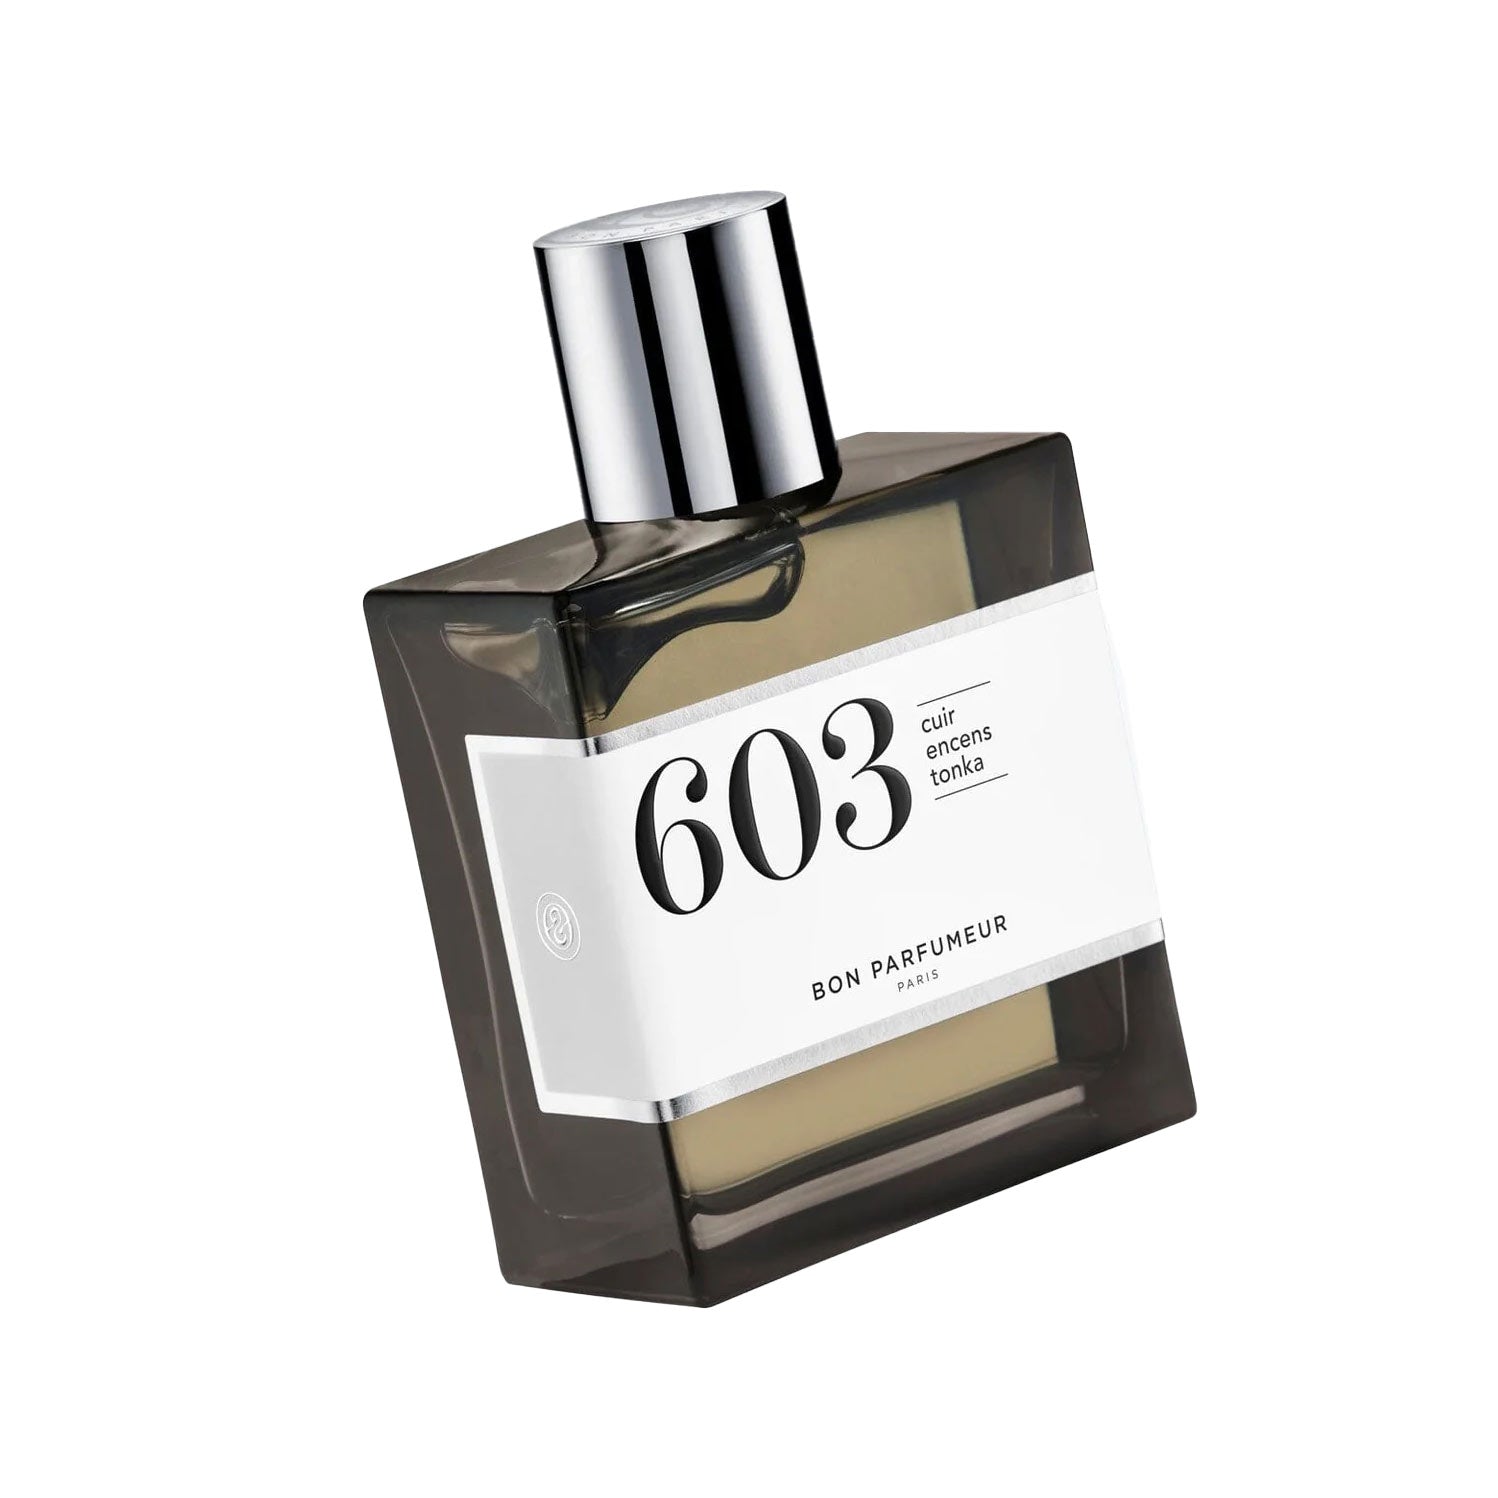 BON PARFUMEUR Eau de Parfum "Les Privés" n°603